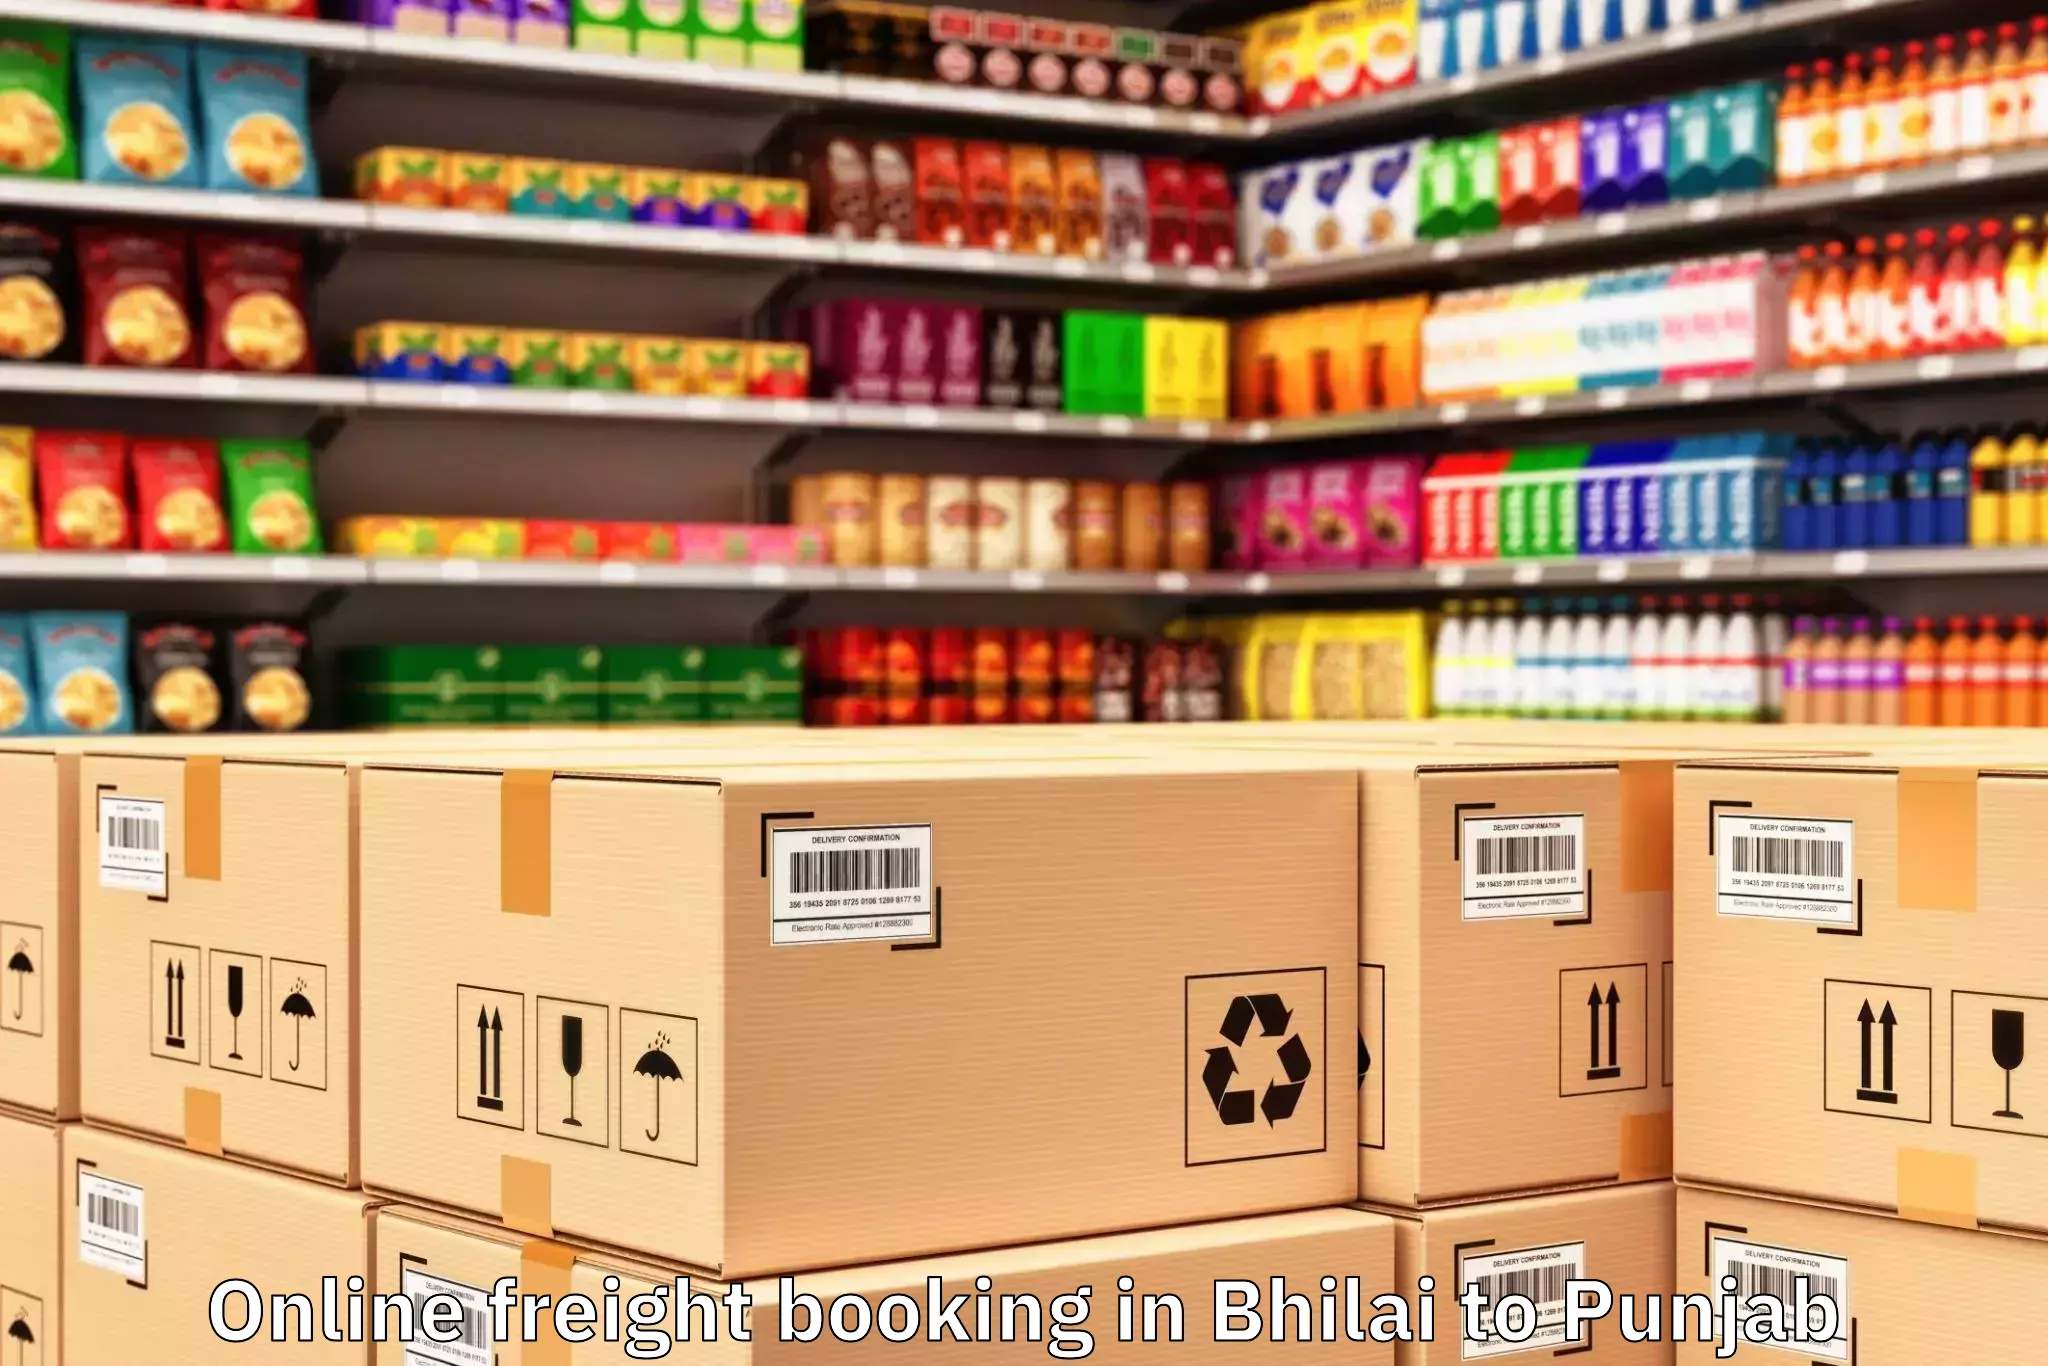 Bhilai to Punjab Online Freight Booking